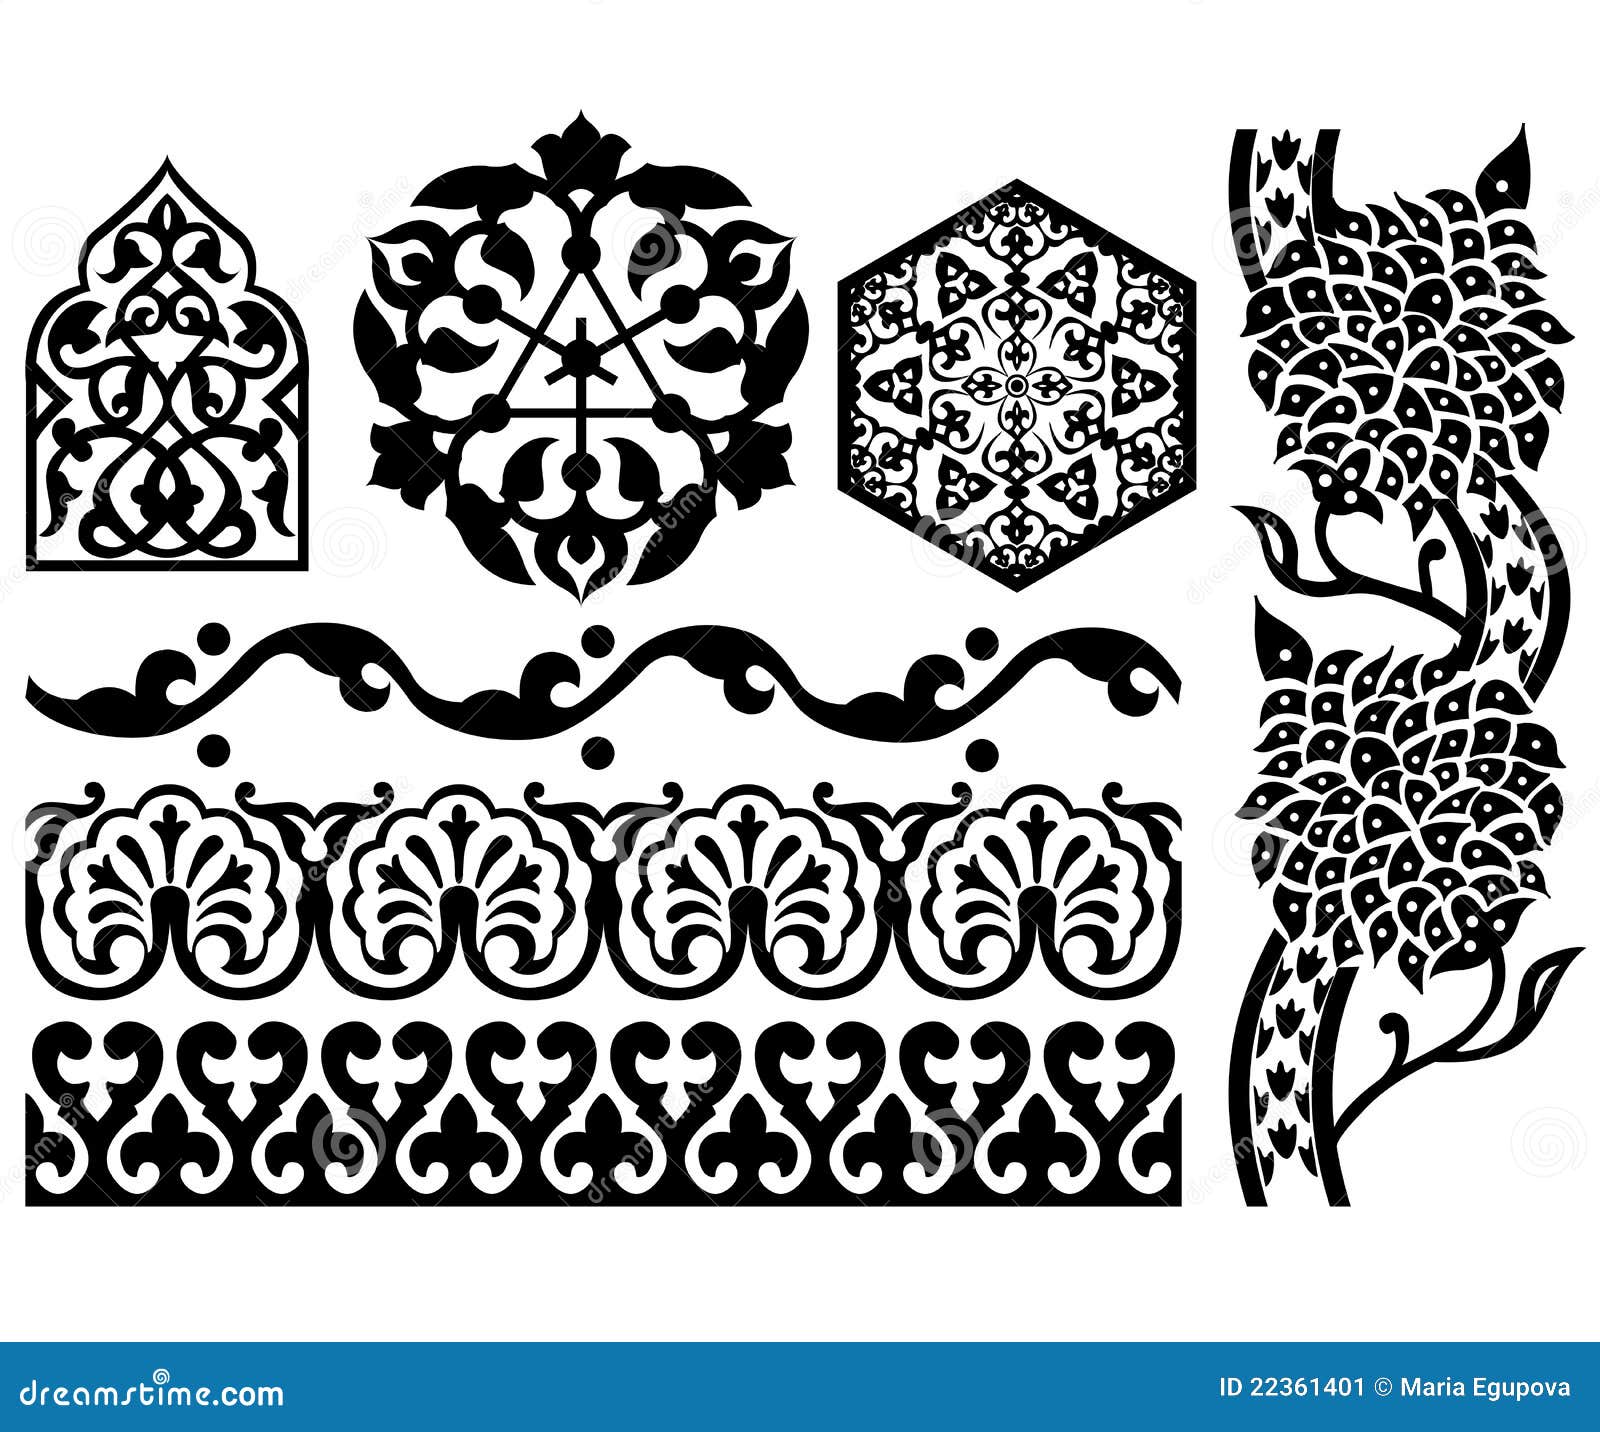 Islamic Design Elements Stock Image Image 22361401